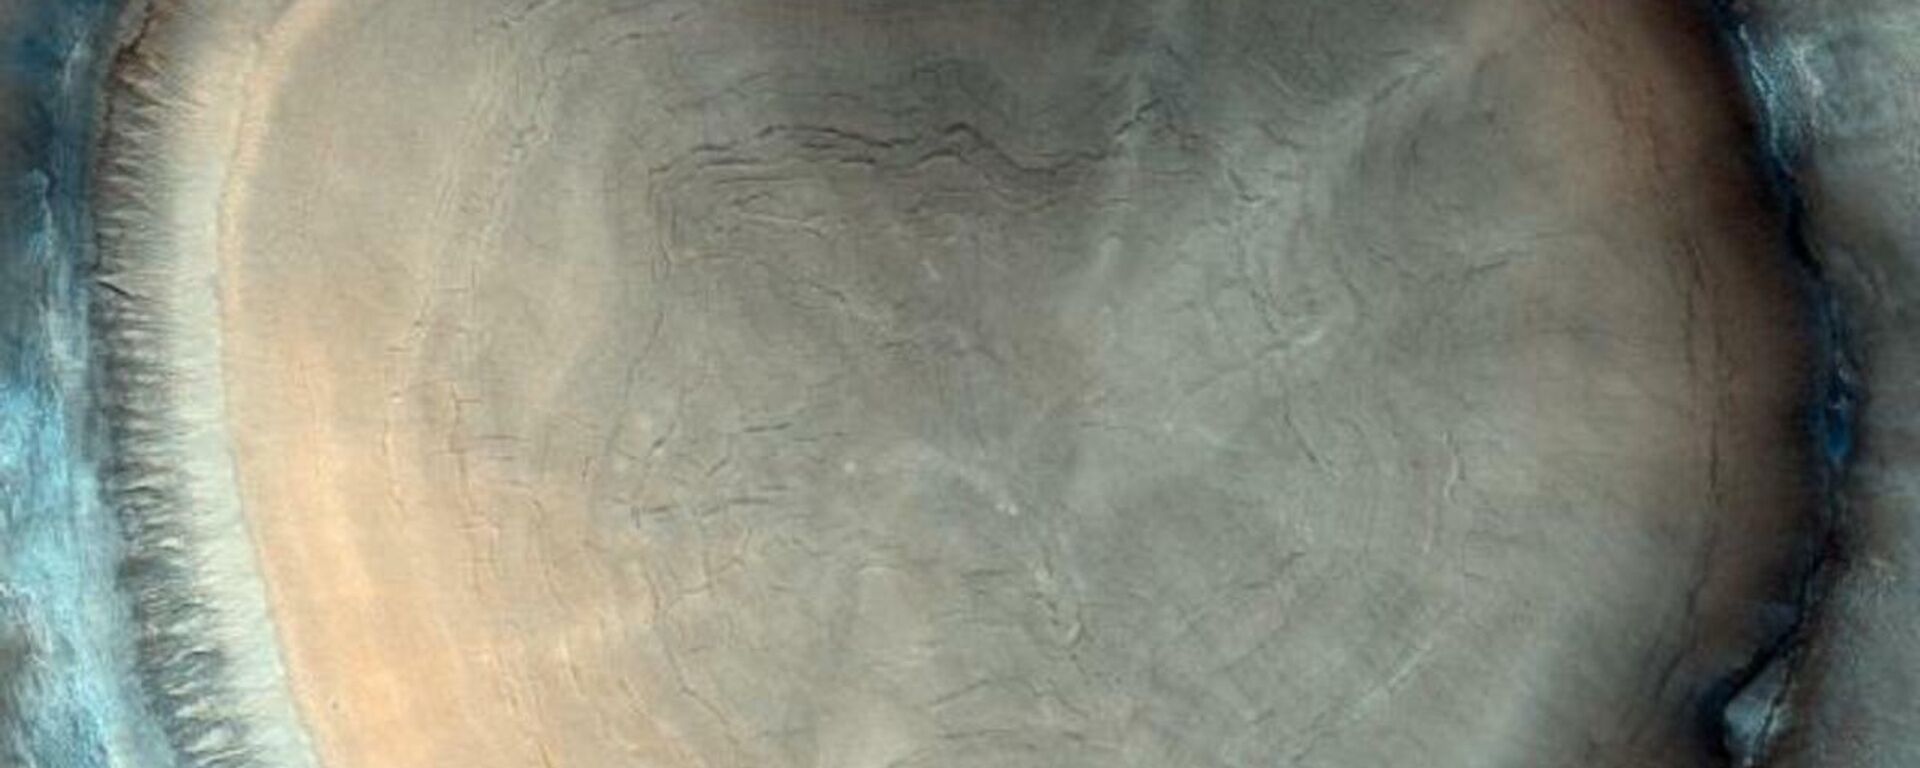 Ağaç kütüğüne benzetilmişti: Mars'ta çekilen fotoğrafın sırrı çözüldü - Sputnik Türkiye, 1920, 31.01.2022